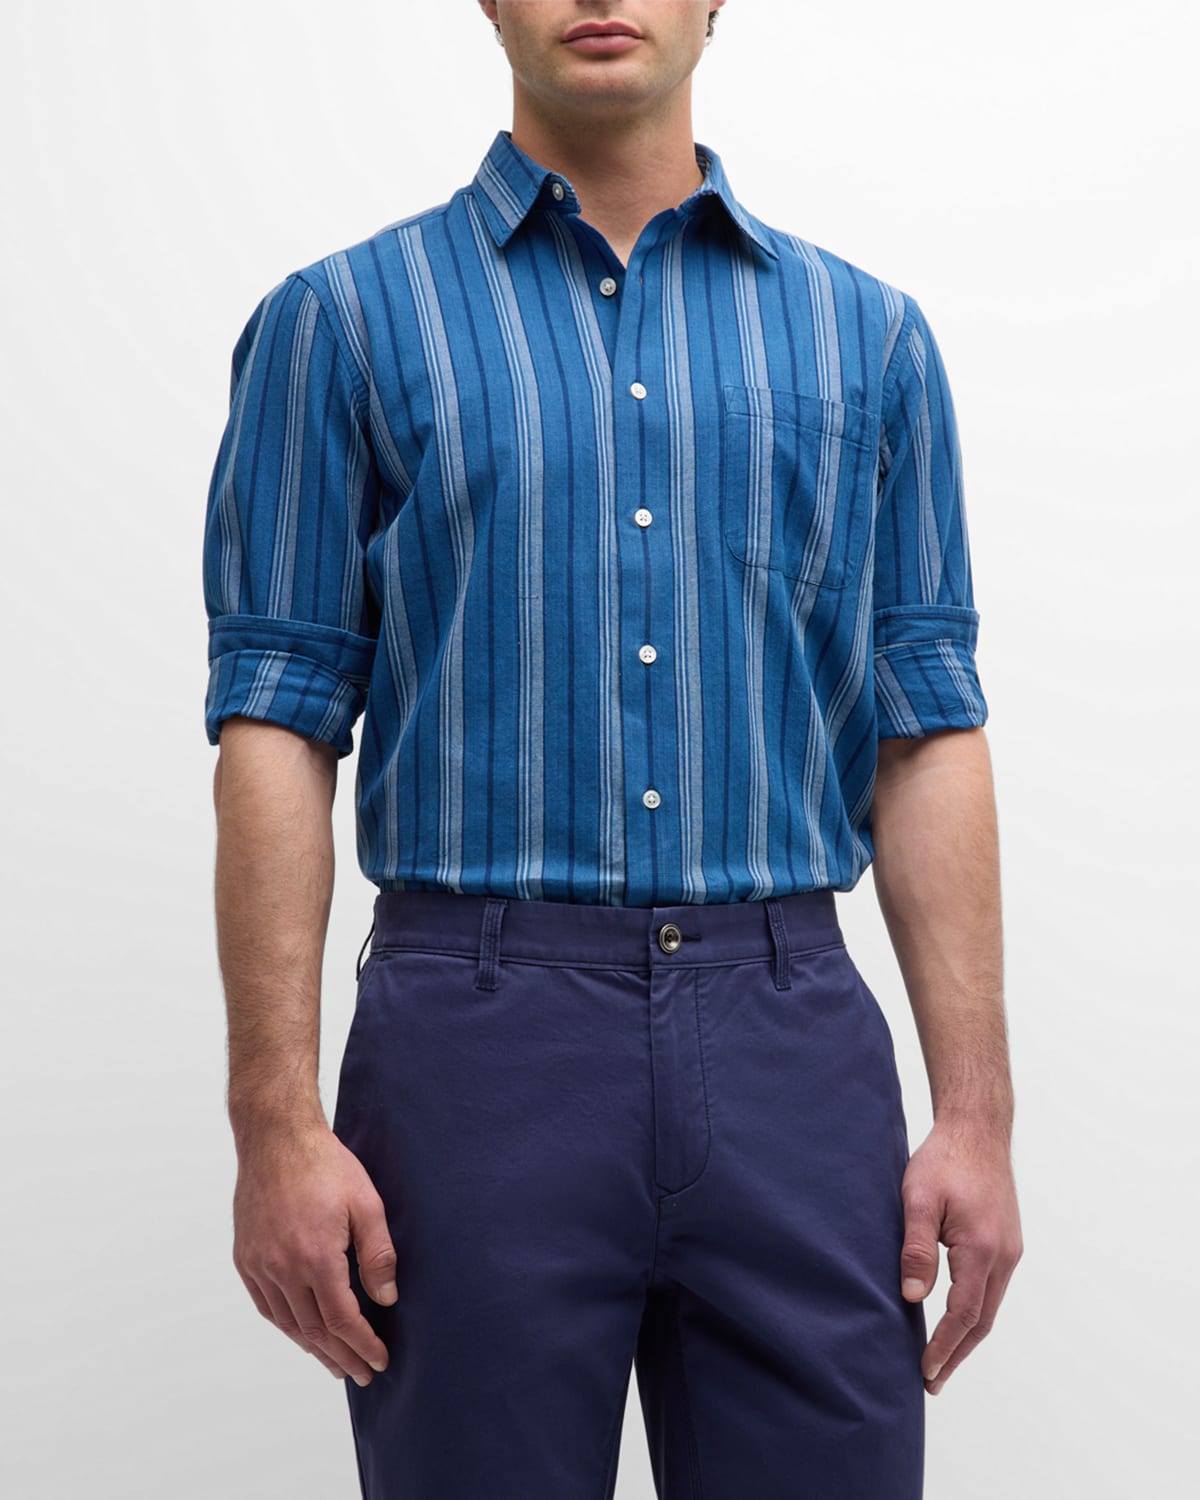 Men's Striped Sport Shirt